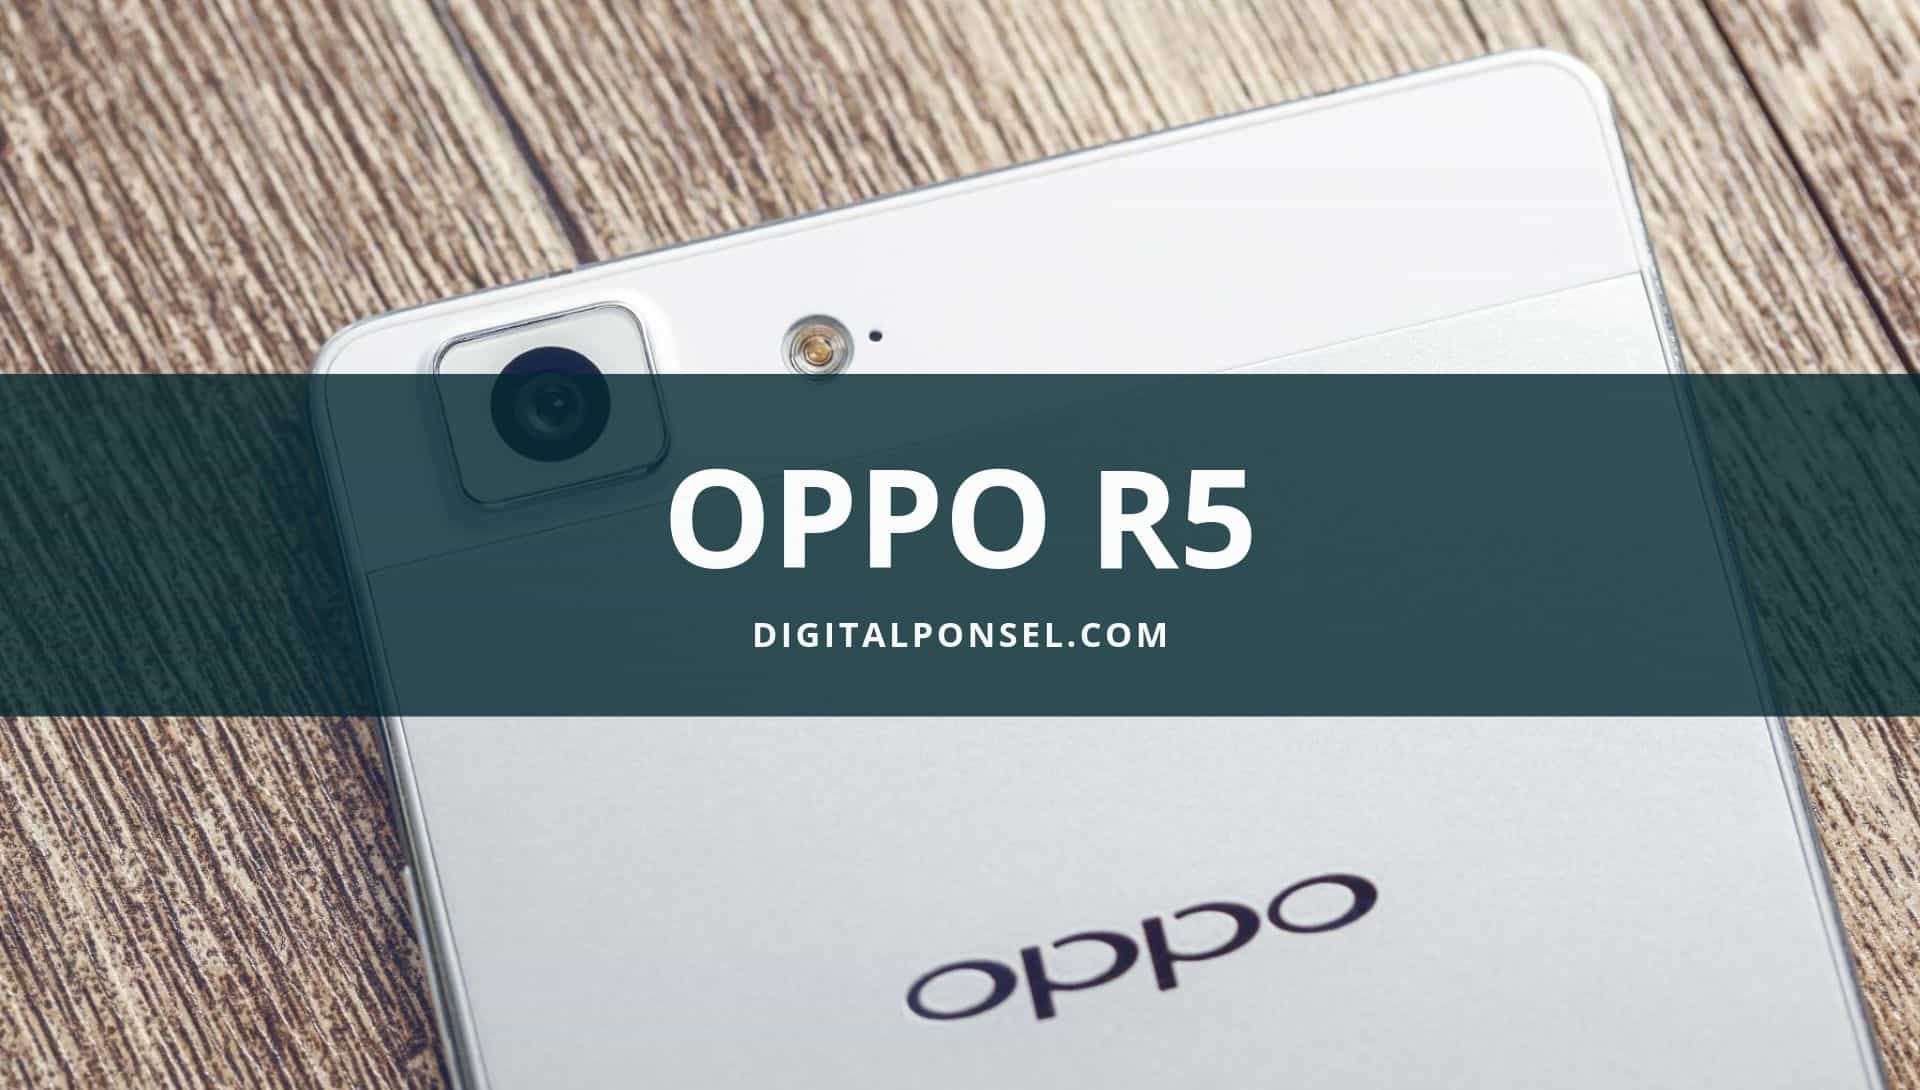 Harga Oppo R5 Terbaru dan Spesifikasi September 2019 [Baru 